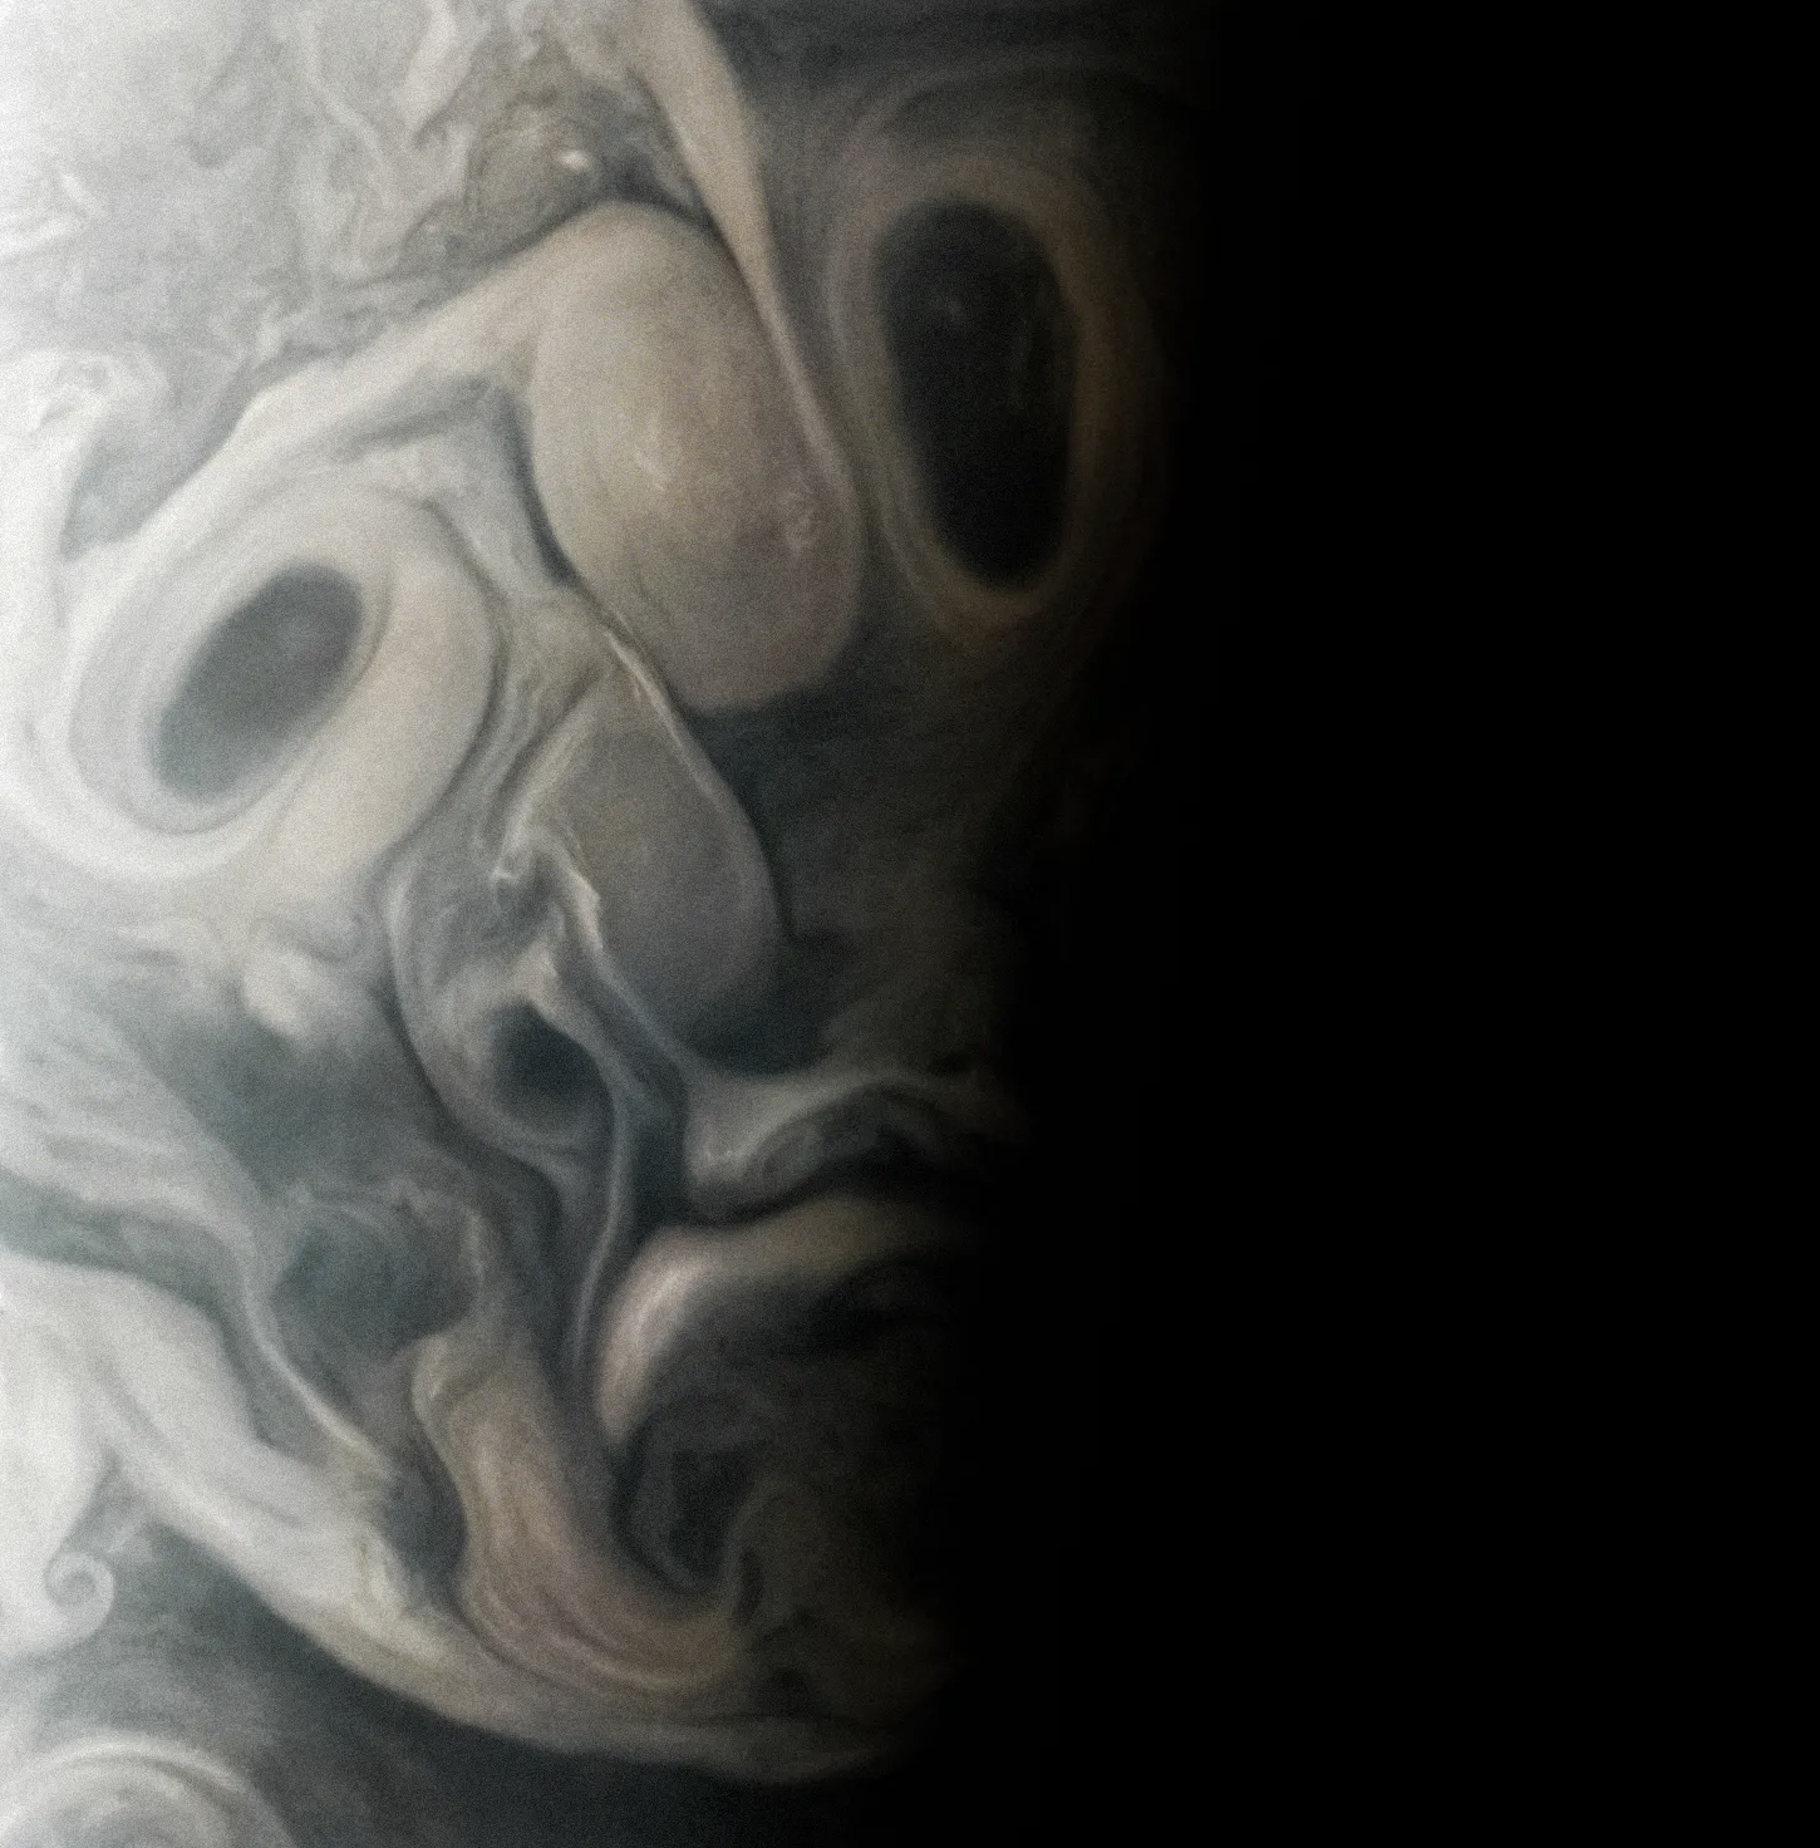 Une image renvoyée par la sonde Juno montre un visage inquiétant dans les nuages de Jupiter. © Nasa, JPL-Caltech, SwRI, MSSS ; Image processing by Vladimir Tarasov, CC BY